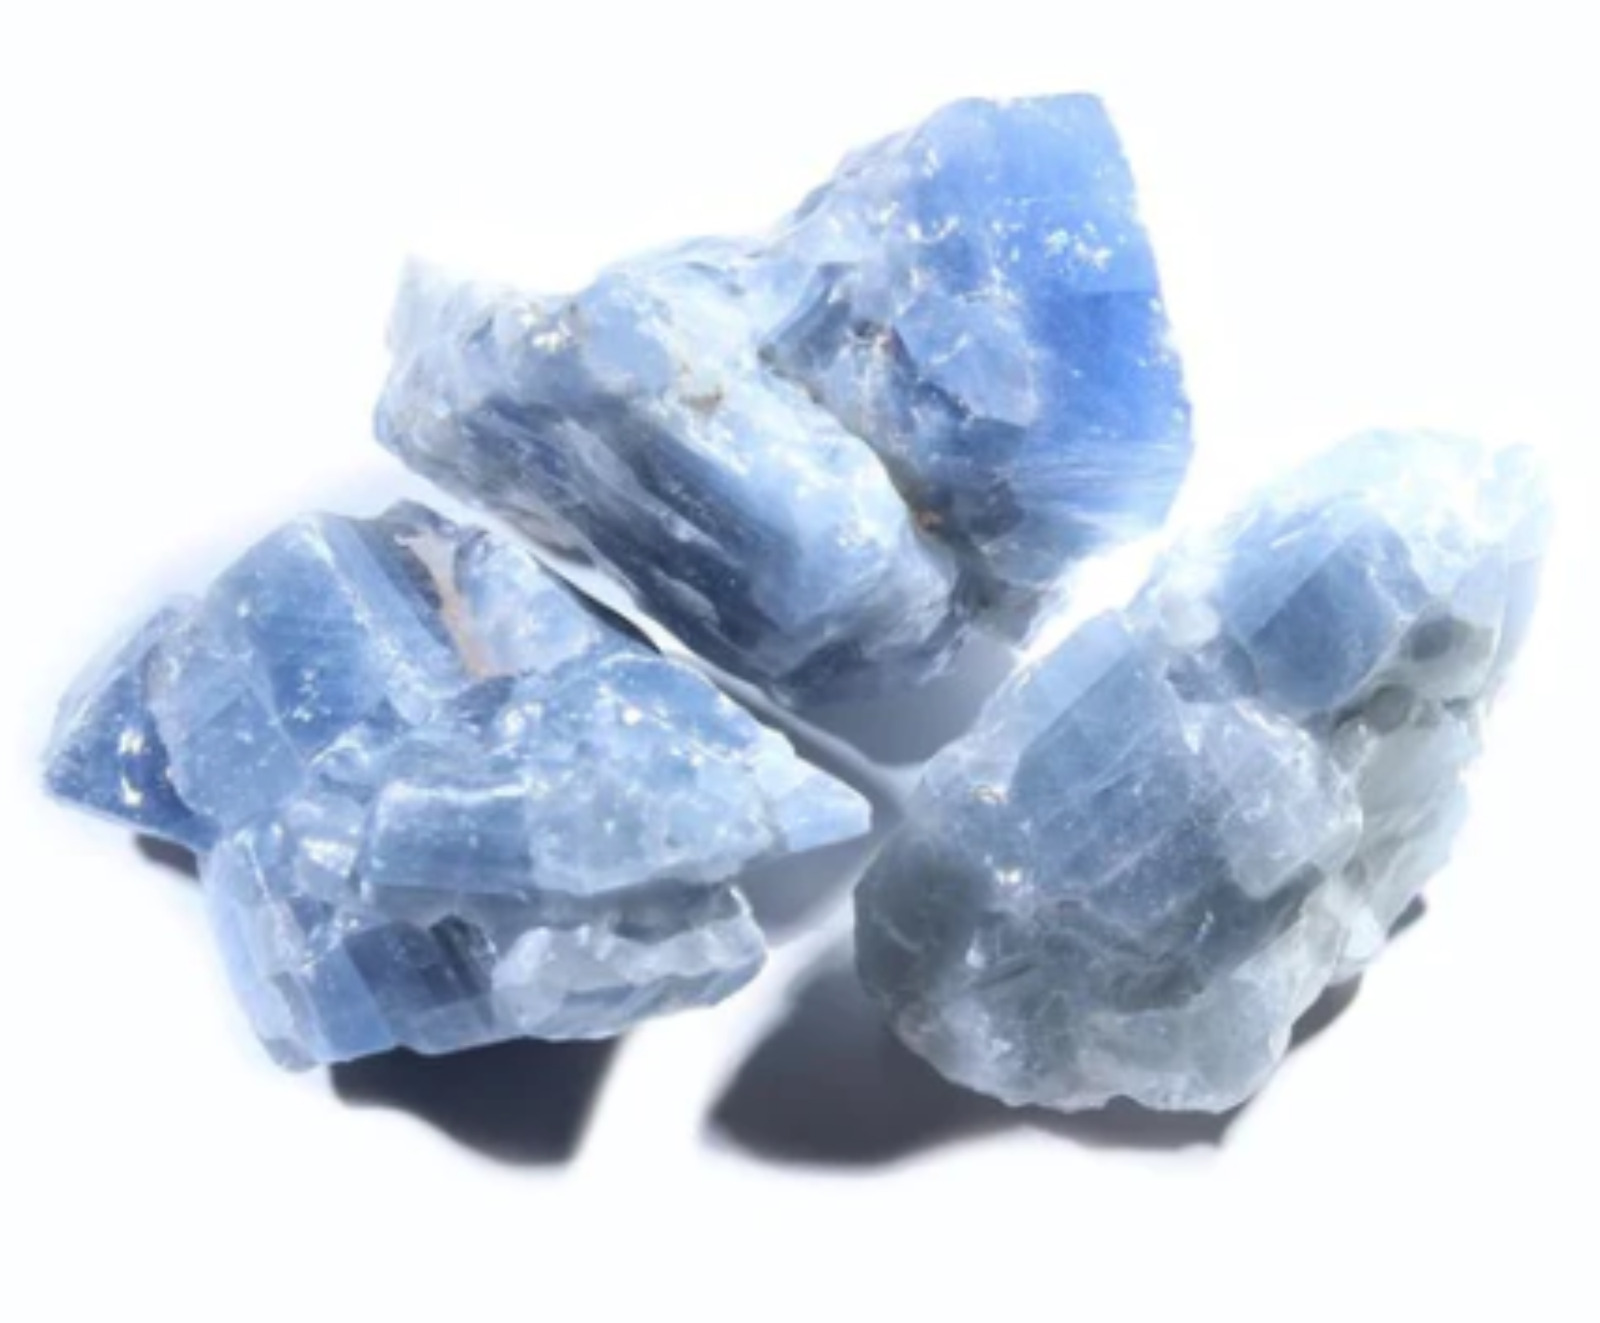 Blue Calcite - Rough Rock for Collection, Home Decor - Bulk Wholesale 1LB option